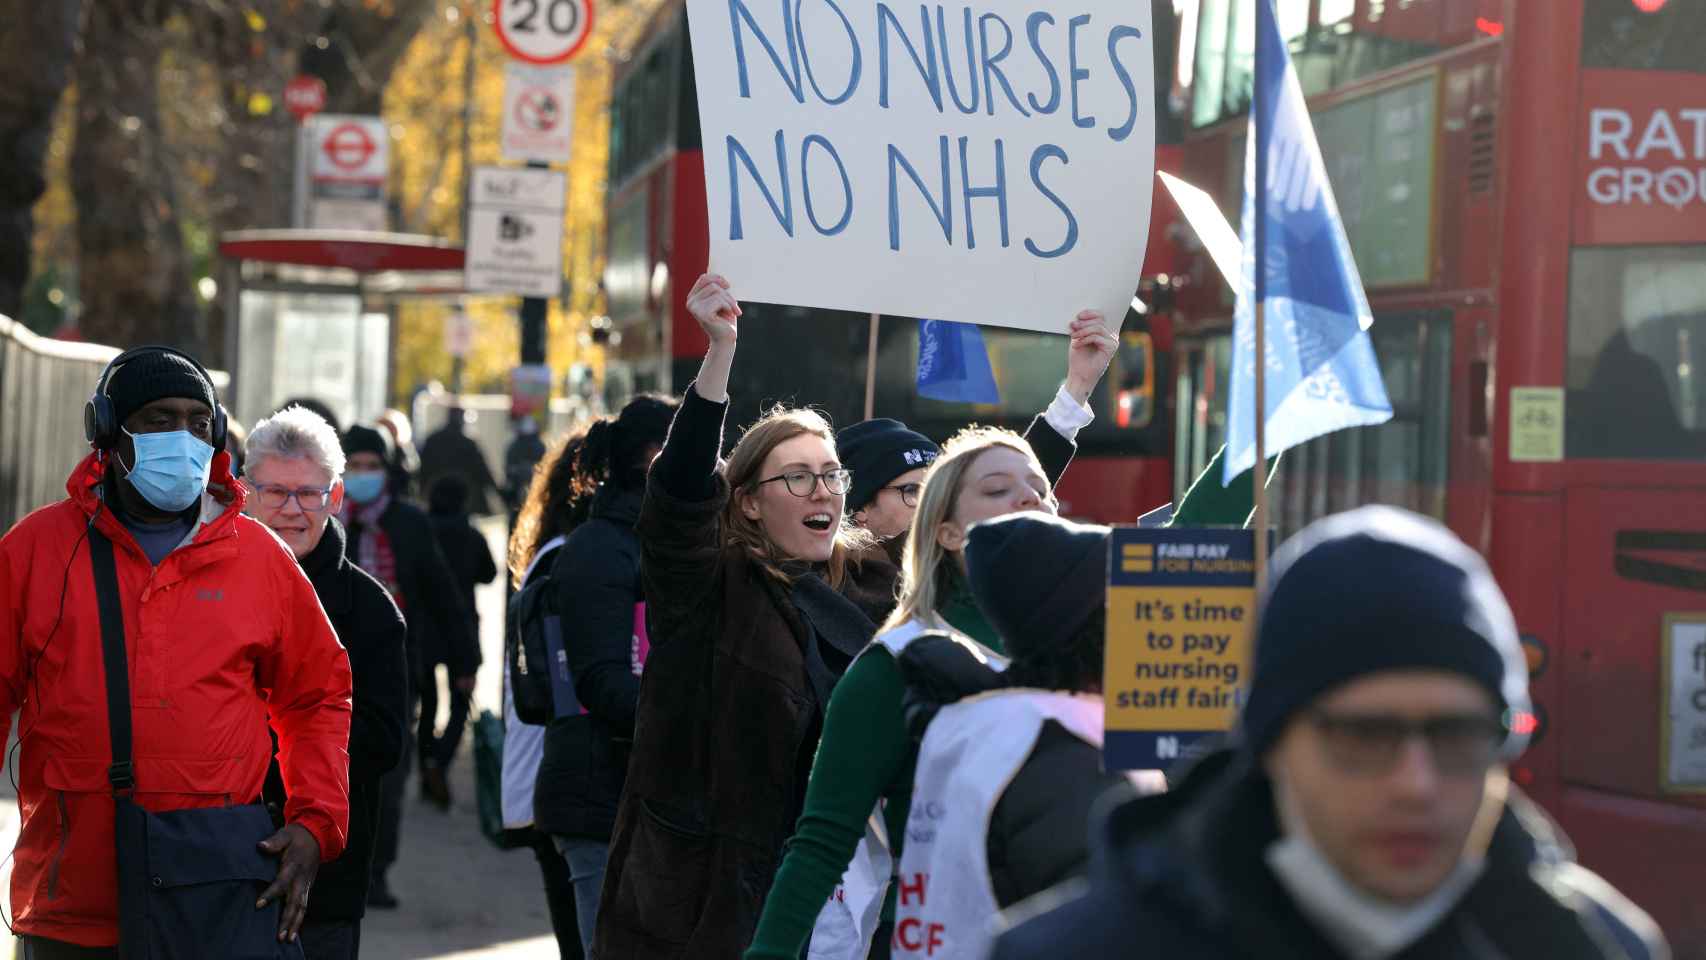 Huelga del NHS (Sistema Nacional de Salud)